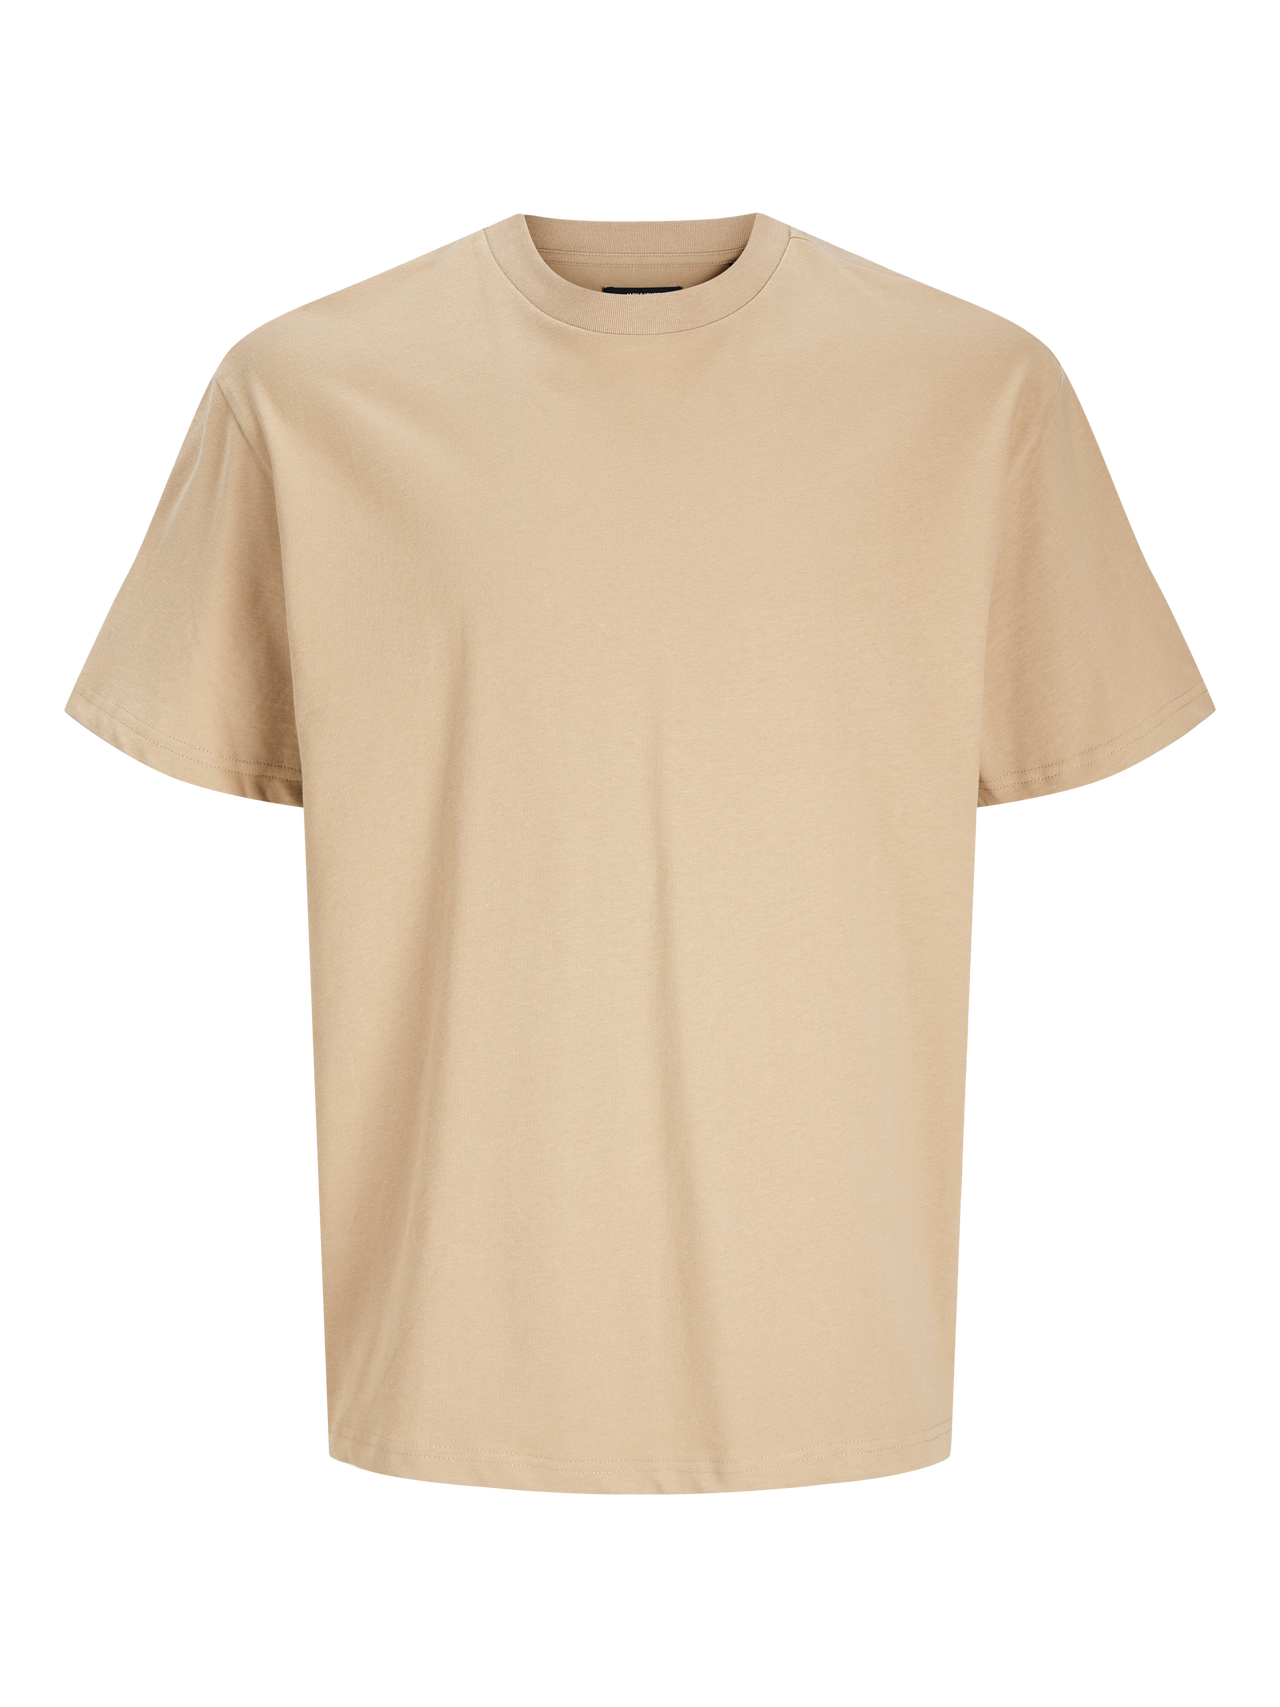 Jack & Jones T-shirt Liso Decote Redondo -Travertine - 12255176